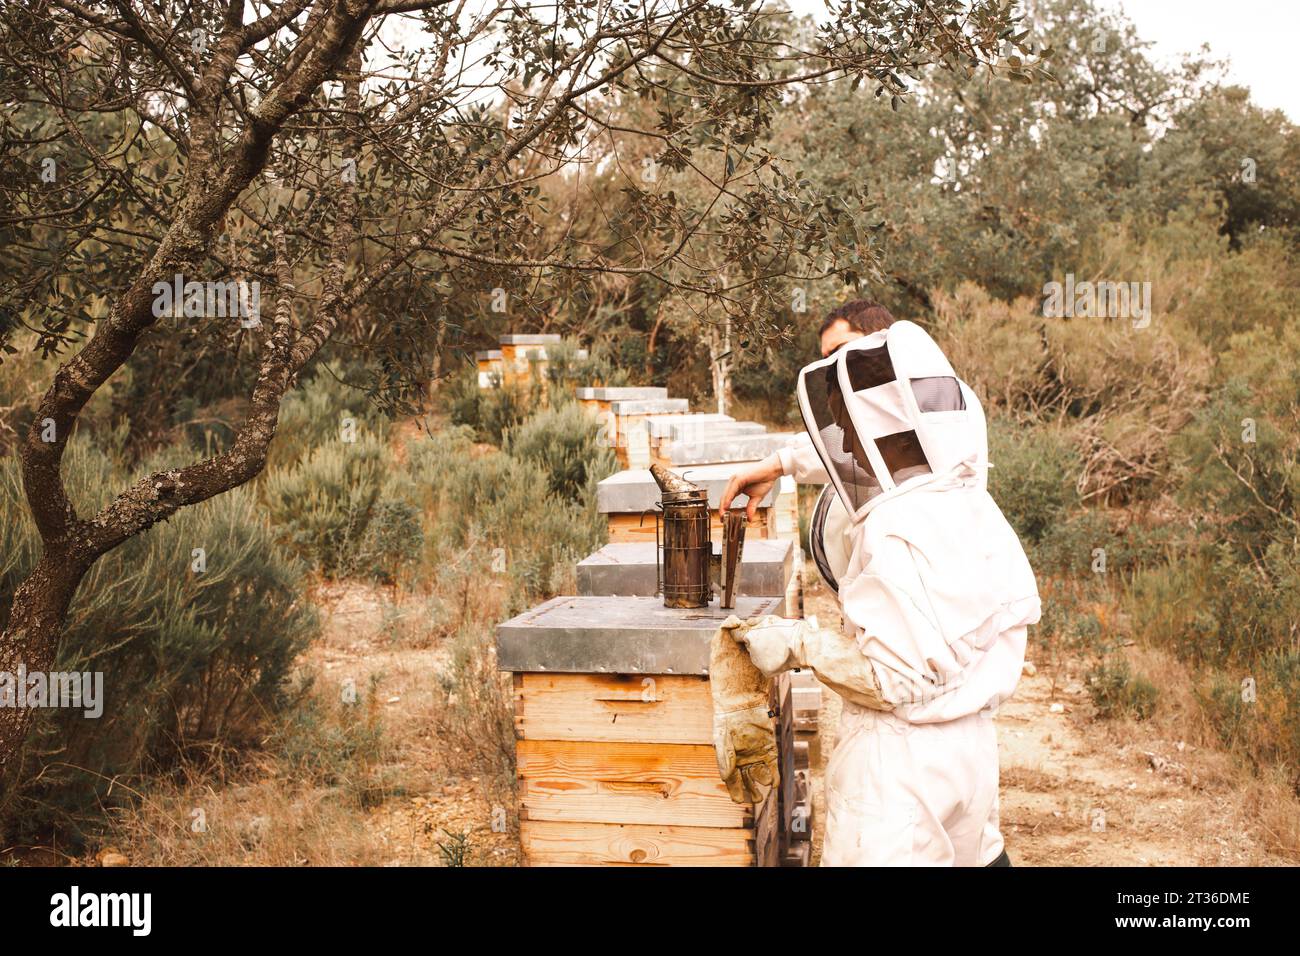 Apiculteurs travaillant près de ruches en bois dans un rucher Banque D'Images